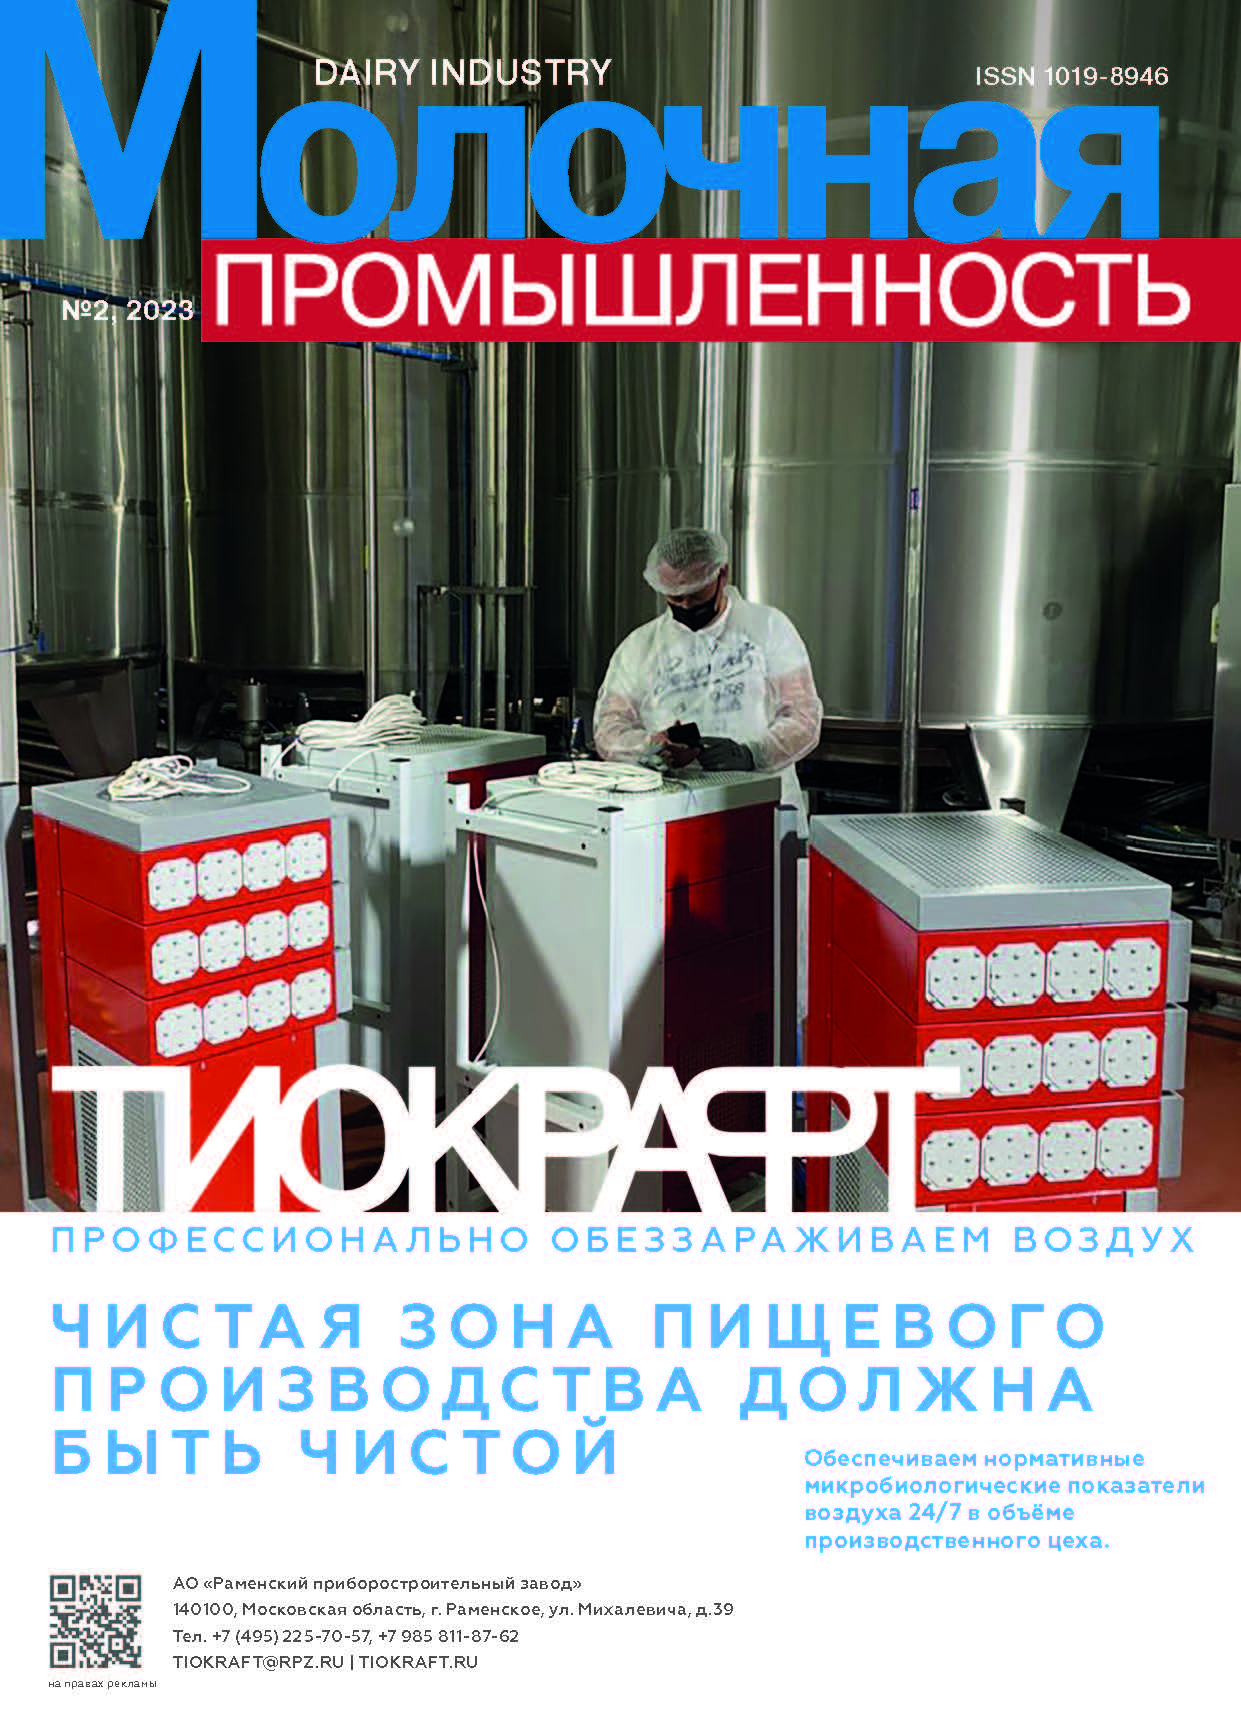             Потребительские предпочтения на рынке молочной продукции в Москве
    